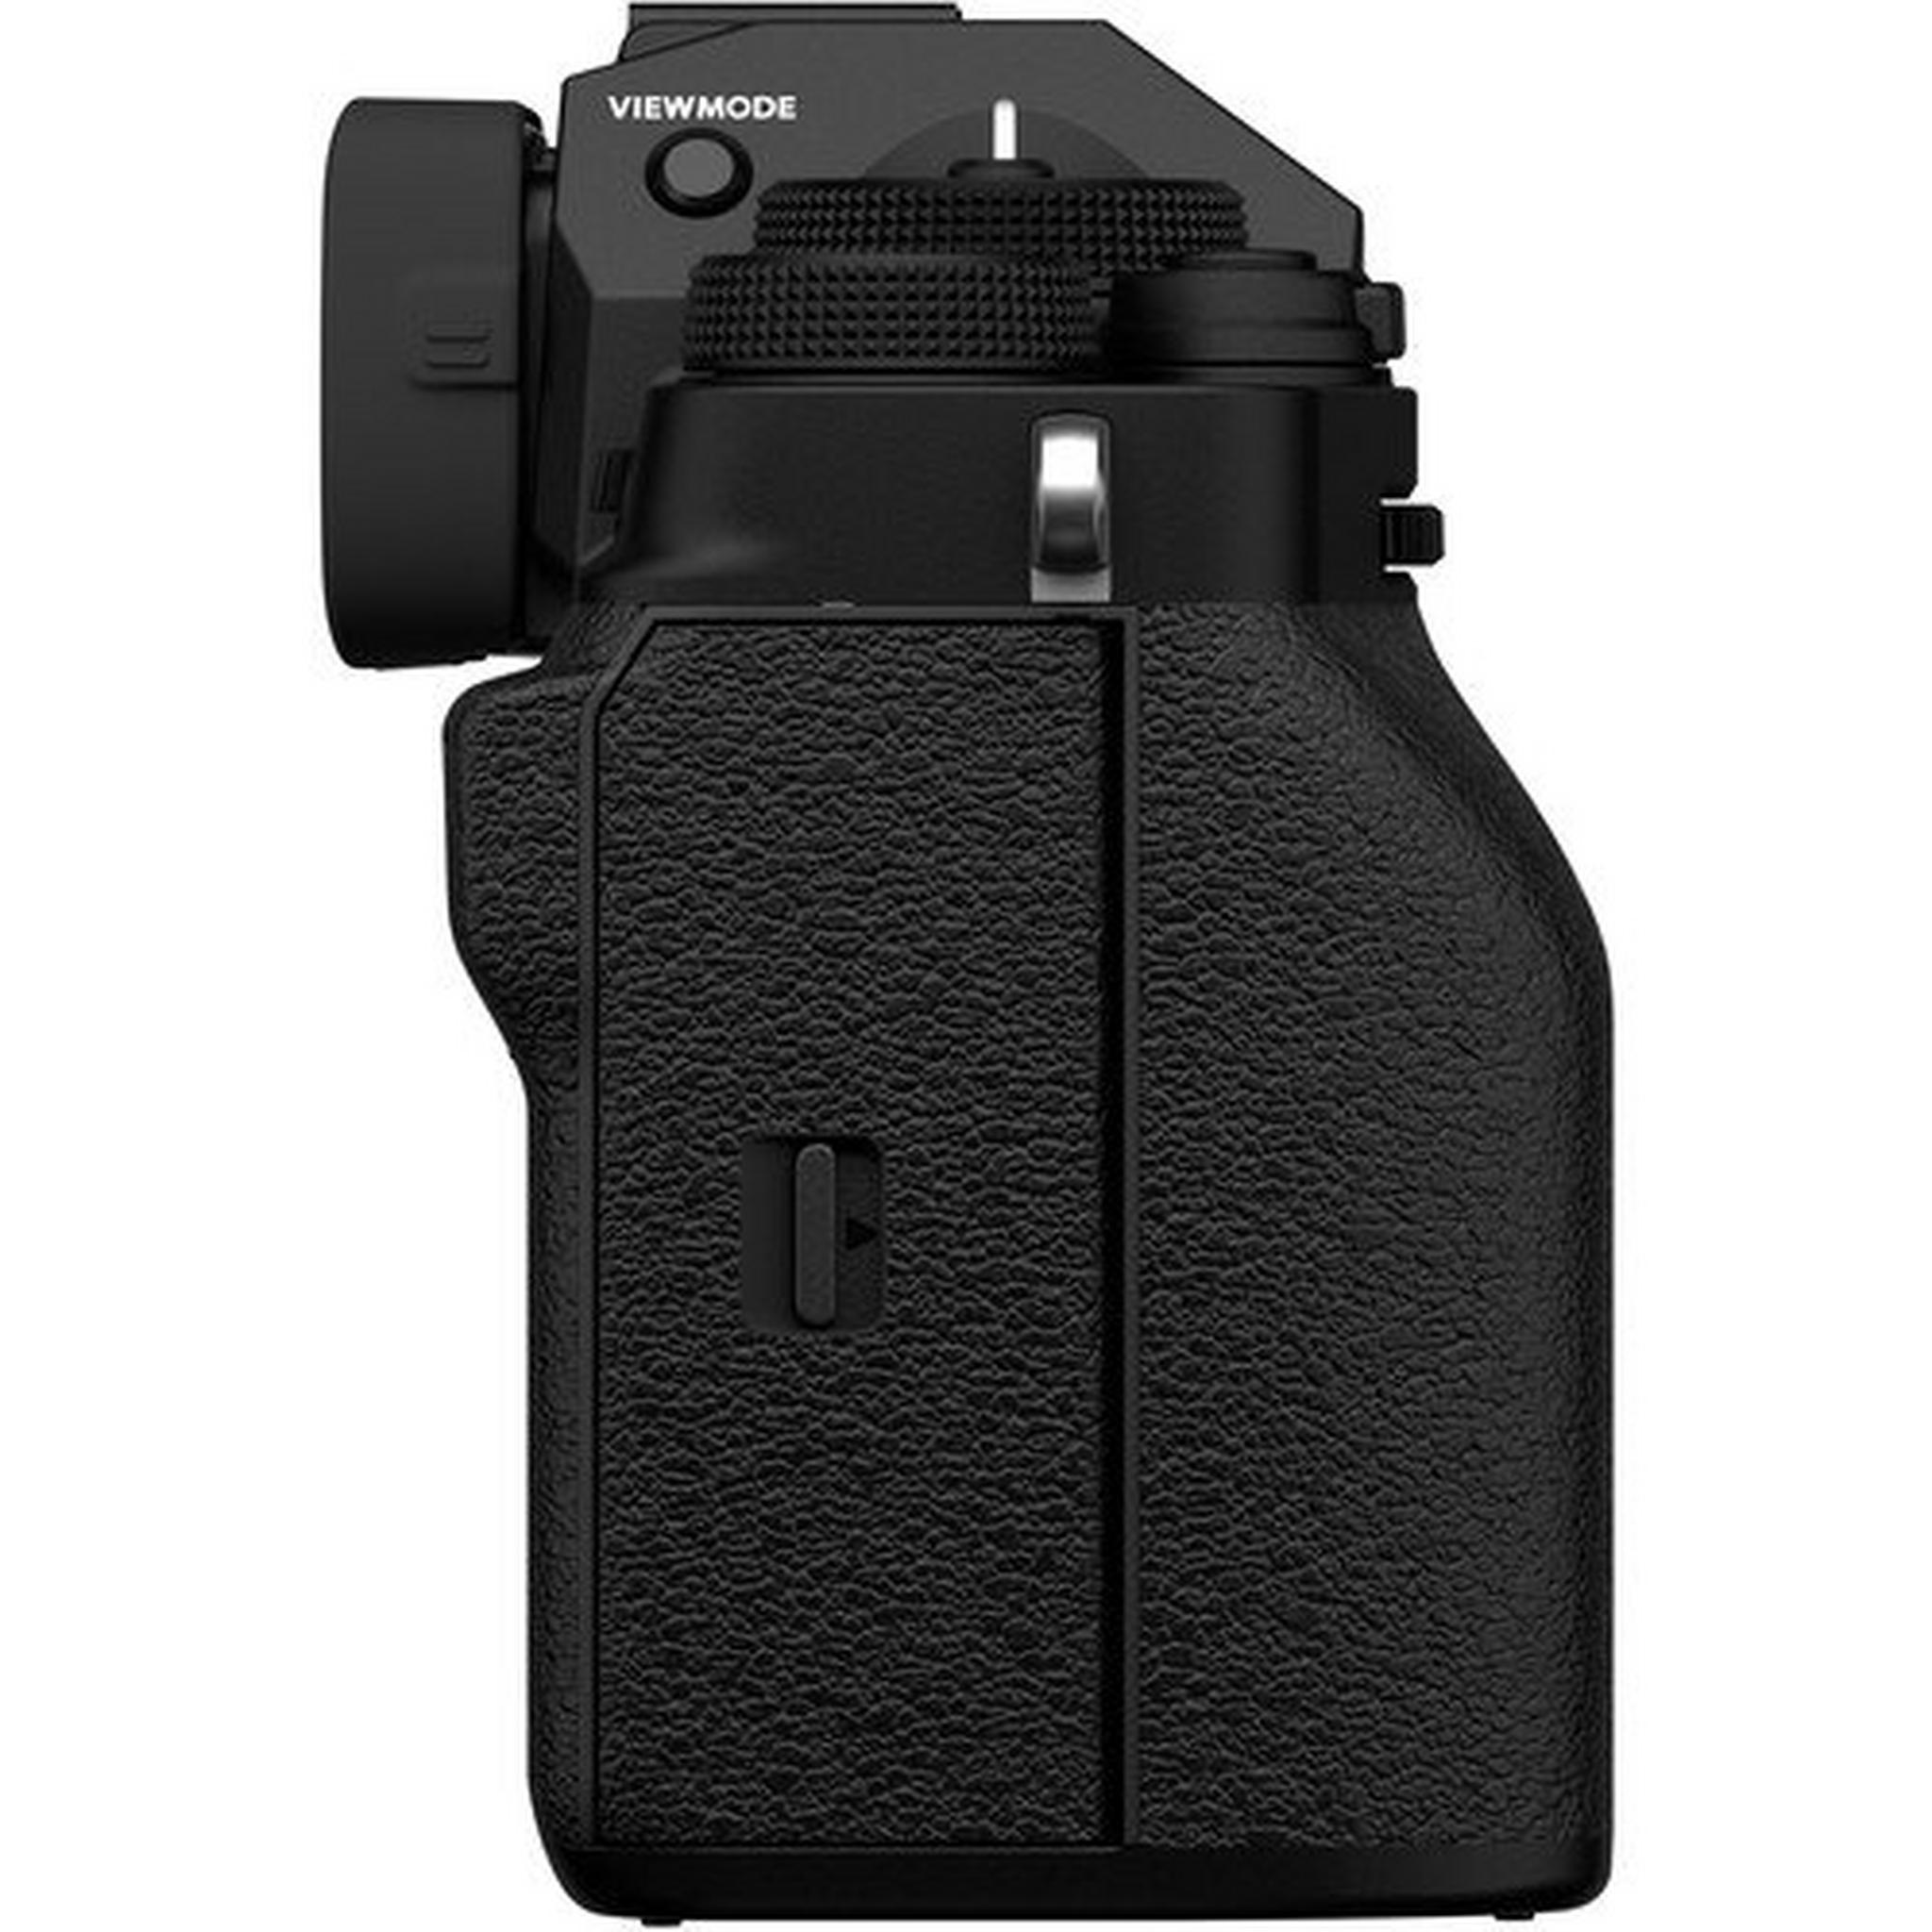 كاميرا فوجي فيلم الرقمية إكس – تي4 بدون مرآه (هيكل فقط) – أسود